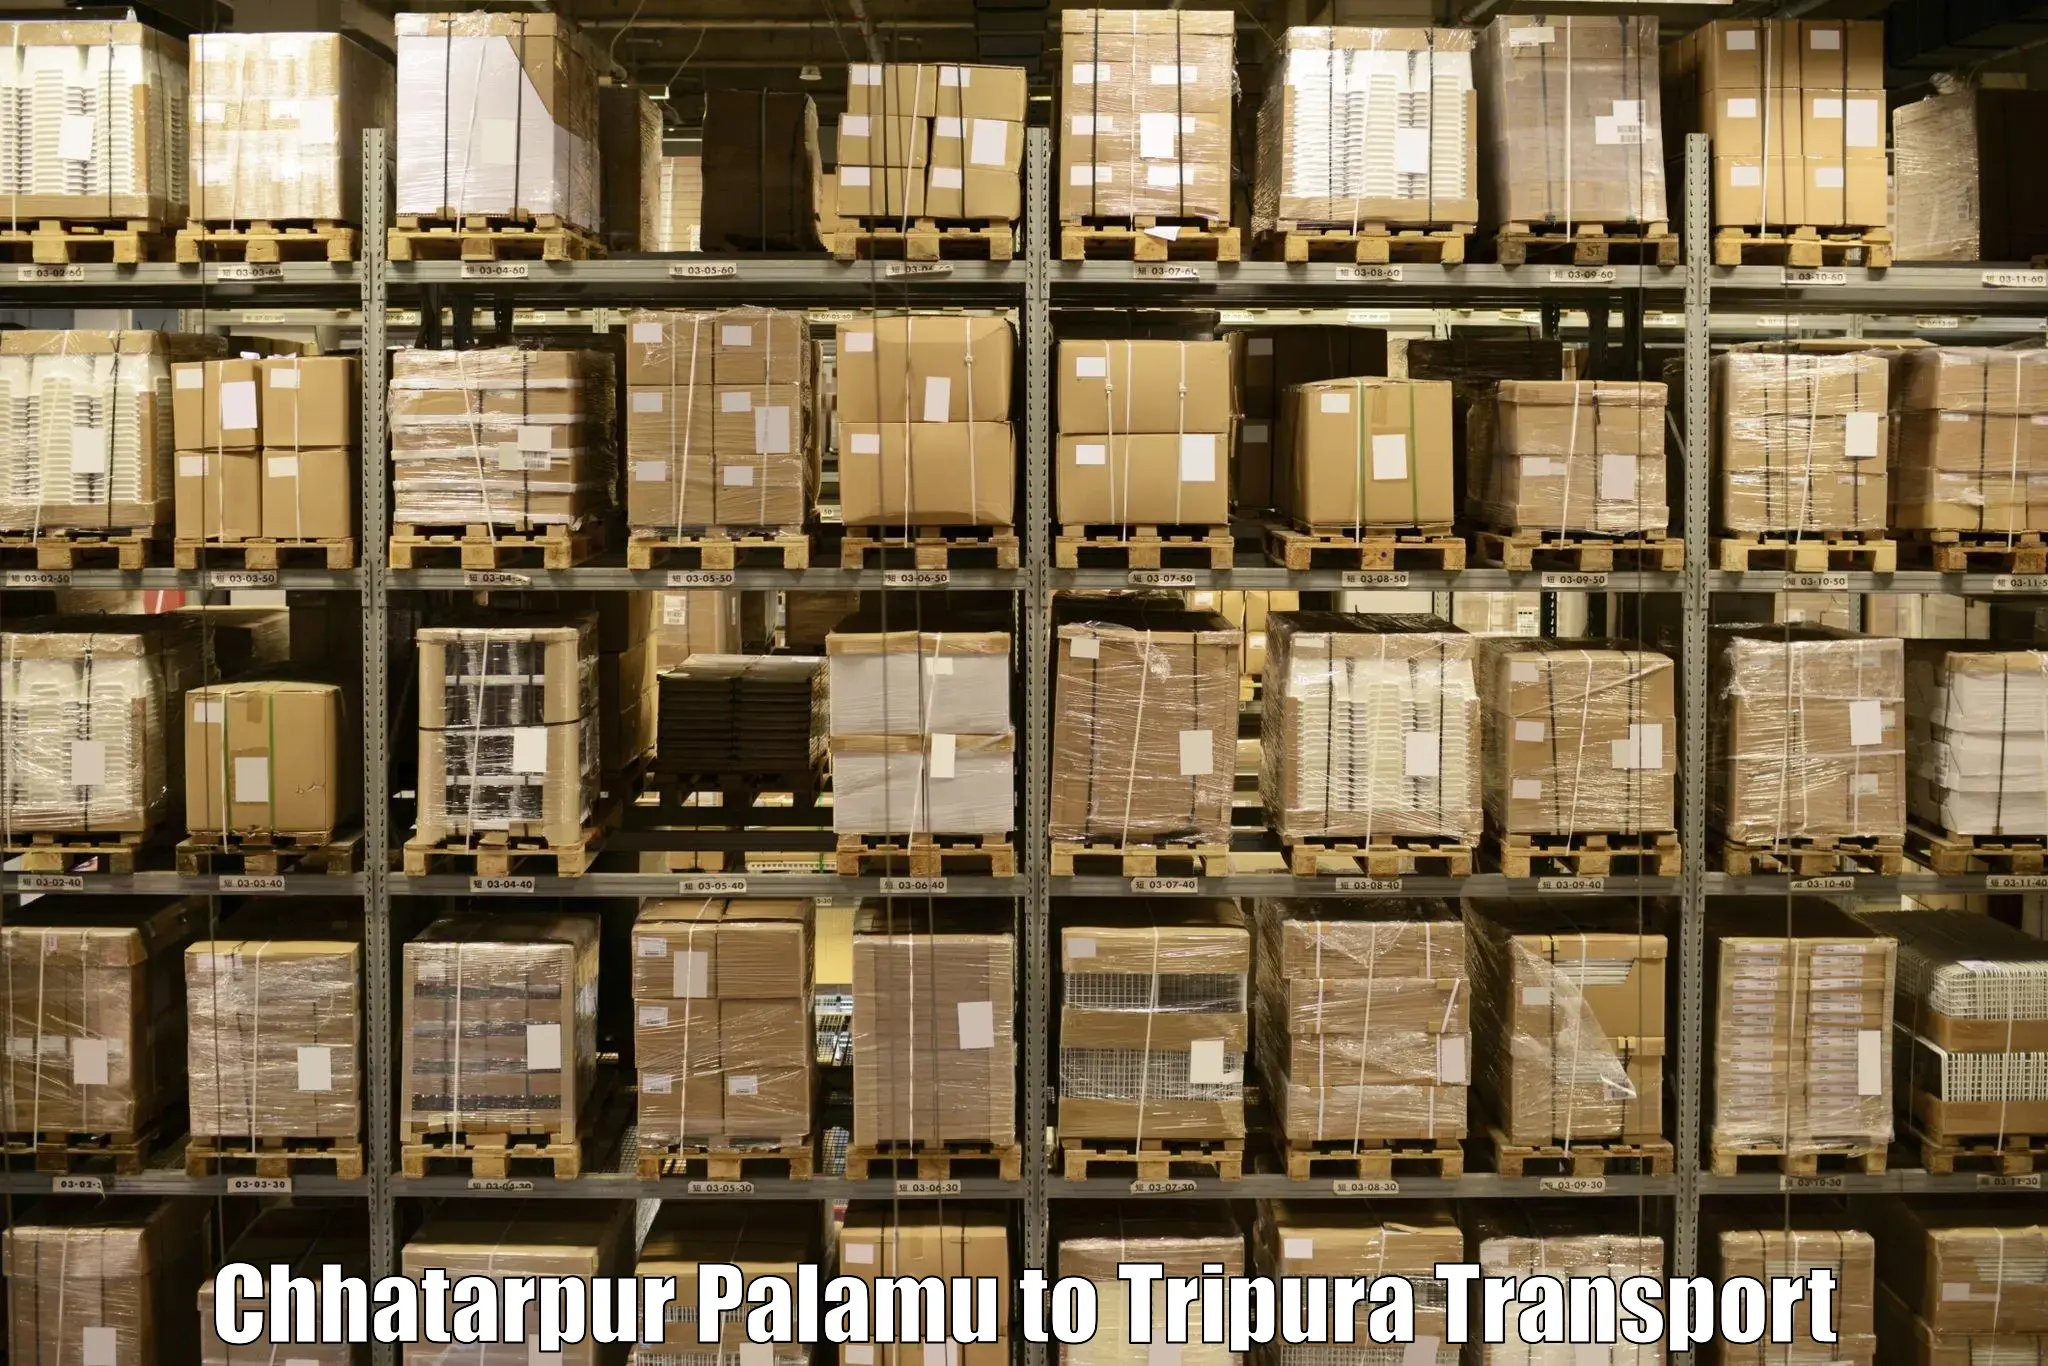 Furniture transport service Chhatarpur Palamu to Ambassa